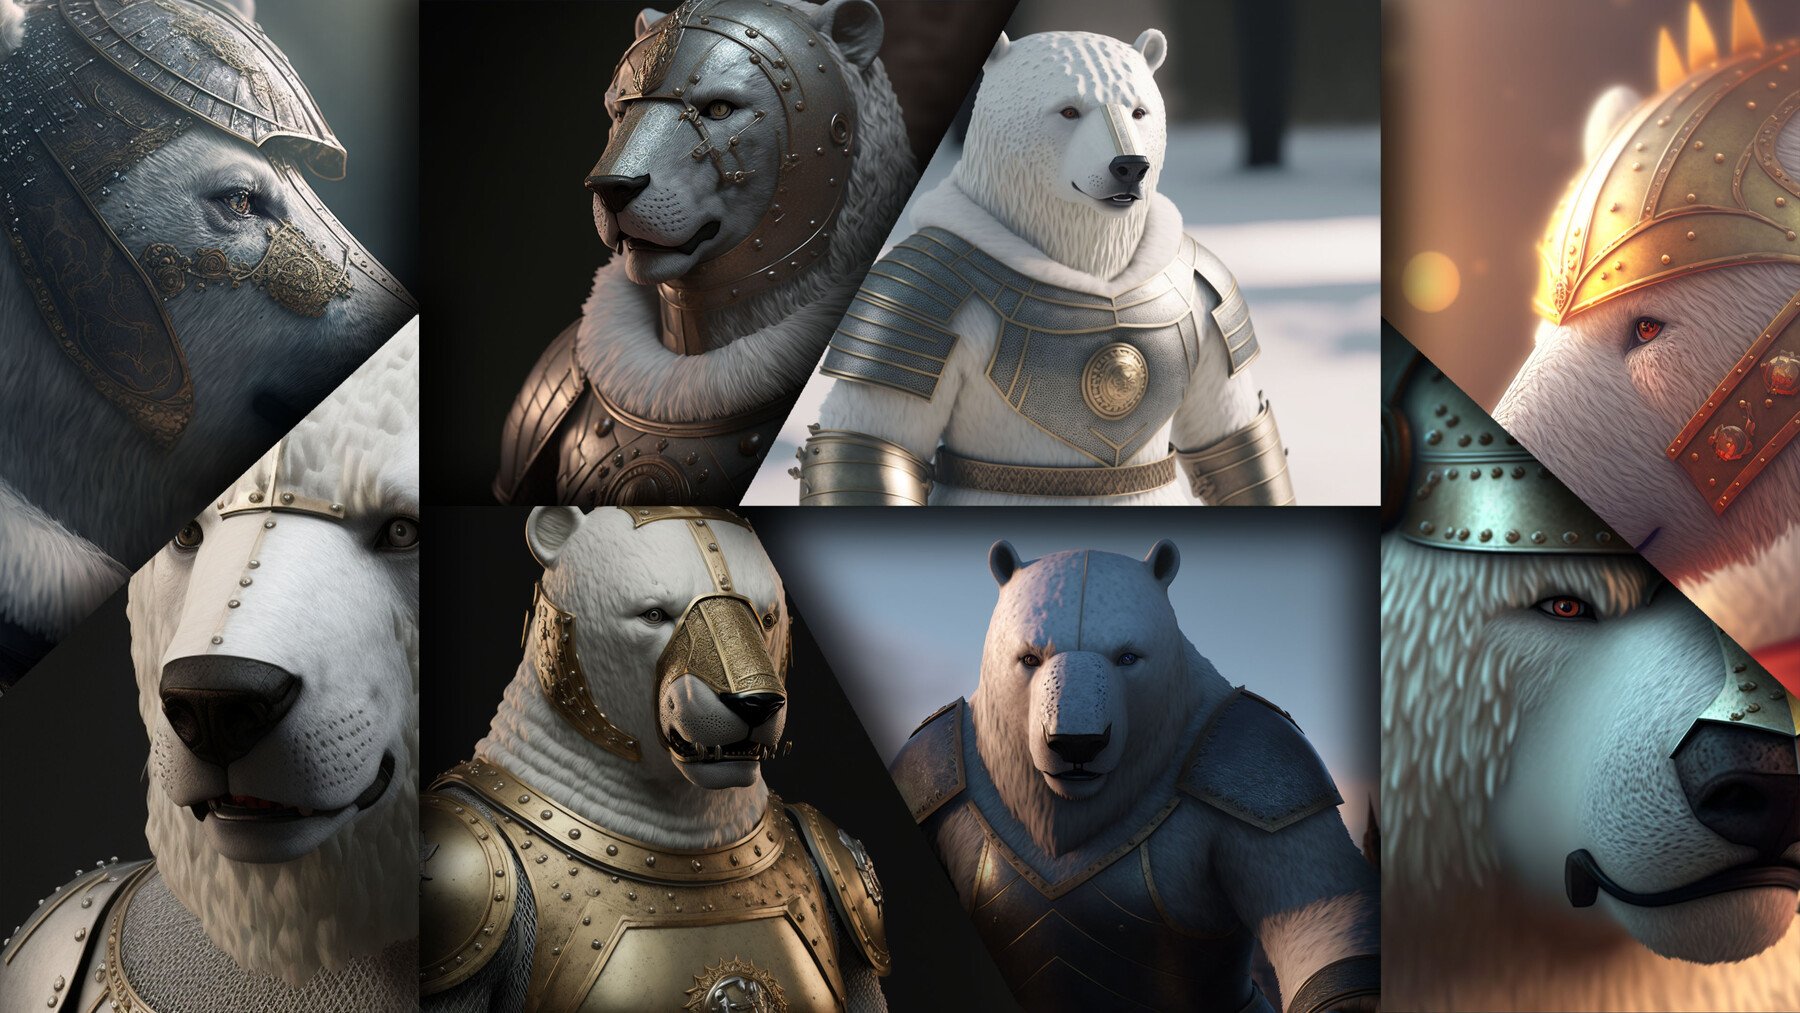 armored polar bear